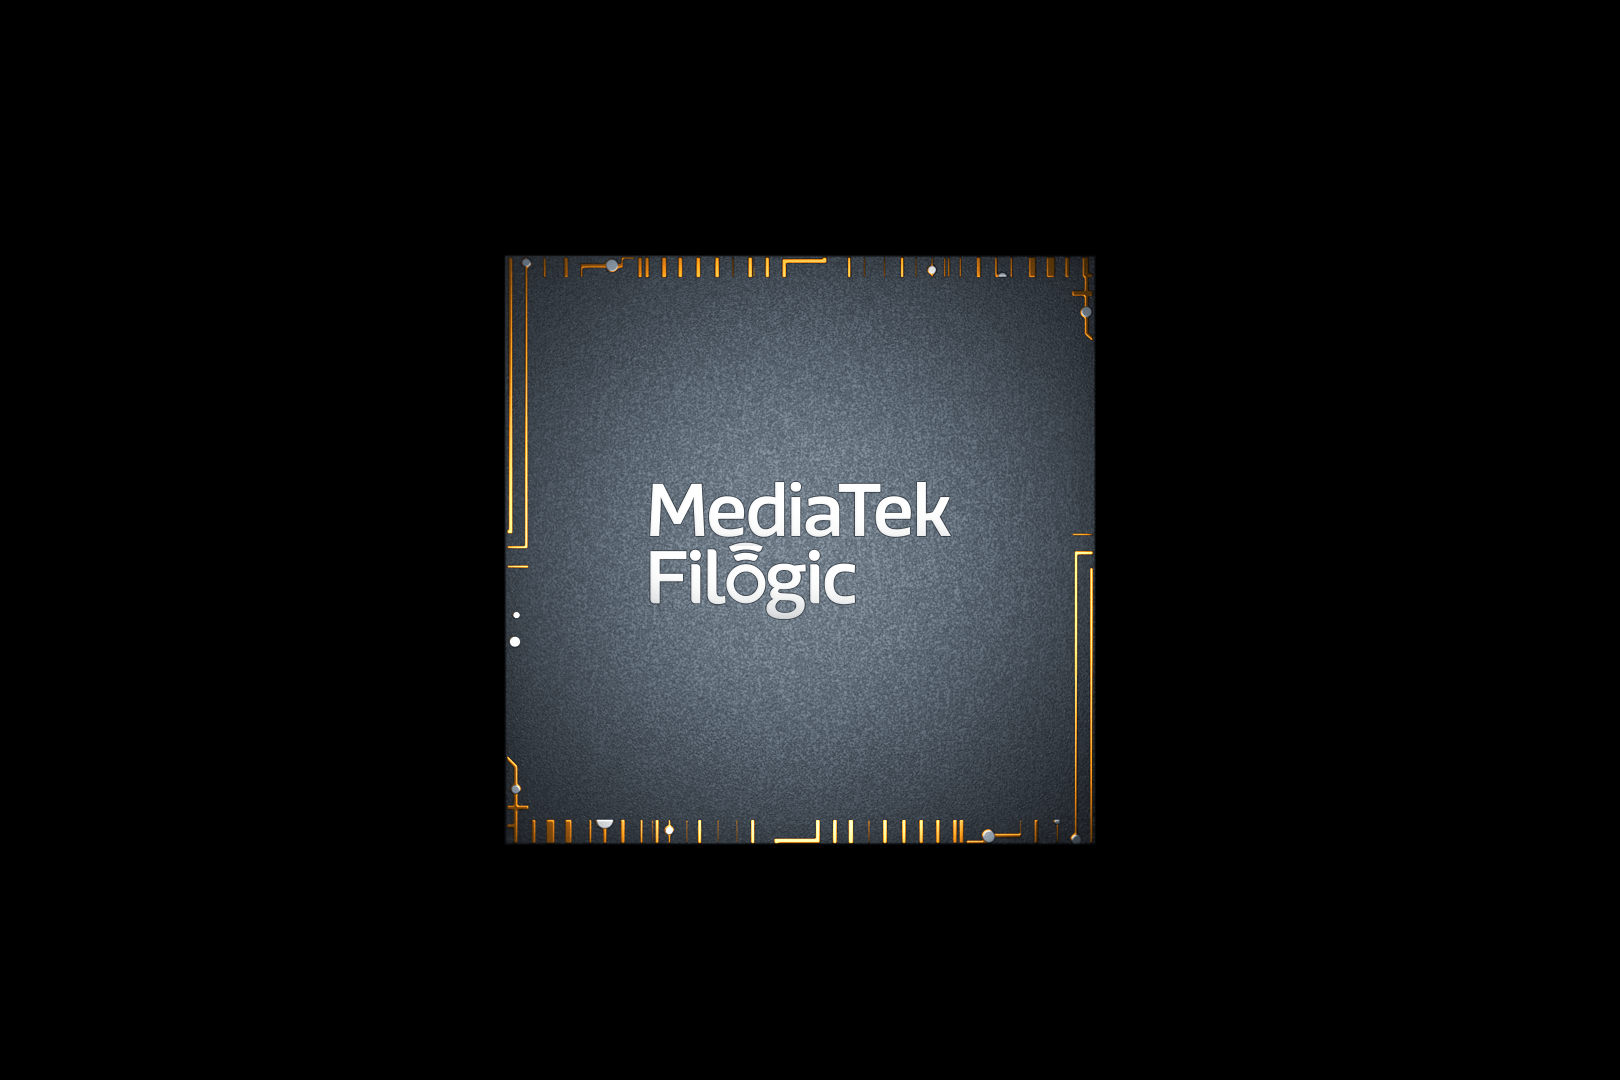 MediaTek giới thiệu các tiến bộ công nghệ về kết nối, truyền thông vệ tinh, điện toán và 5G tại MWC